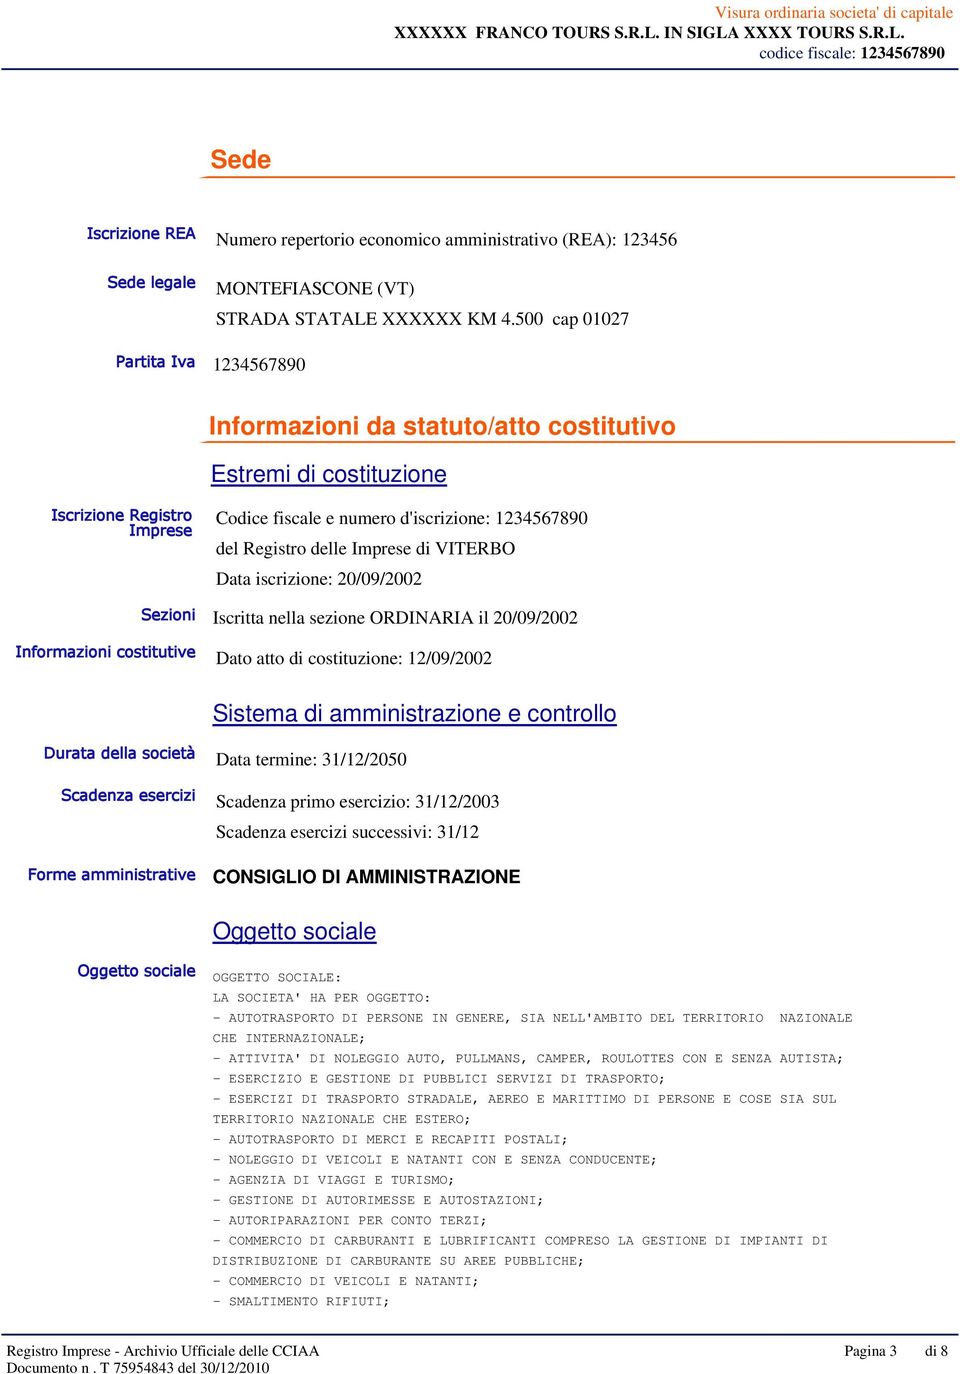 Imprese di VITERBO Data iscrizione: 20/09/2002 Sezioni Iscritta nella sezione ORDINARIA il 20/09/2002 Informazioni costitutive Dato atto di costituzione: 12/09/2002 Sistema di amministrazione e